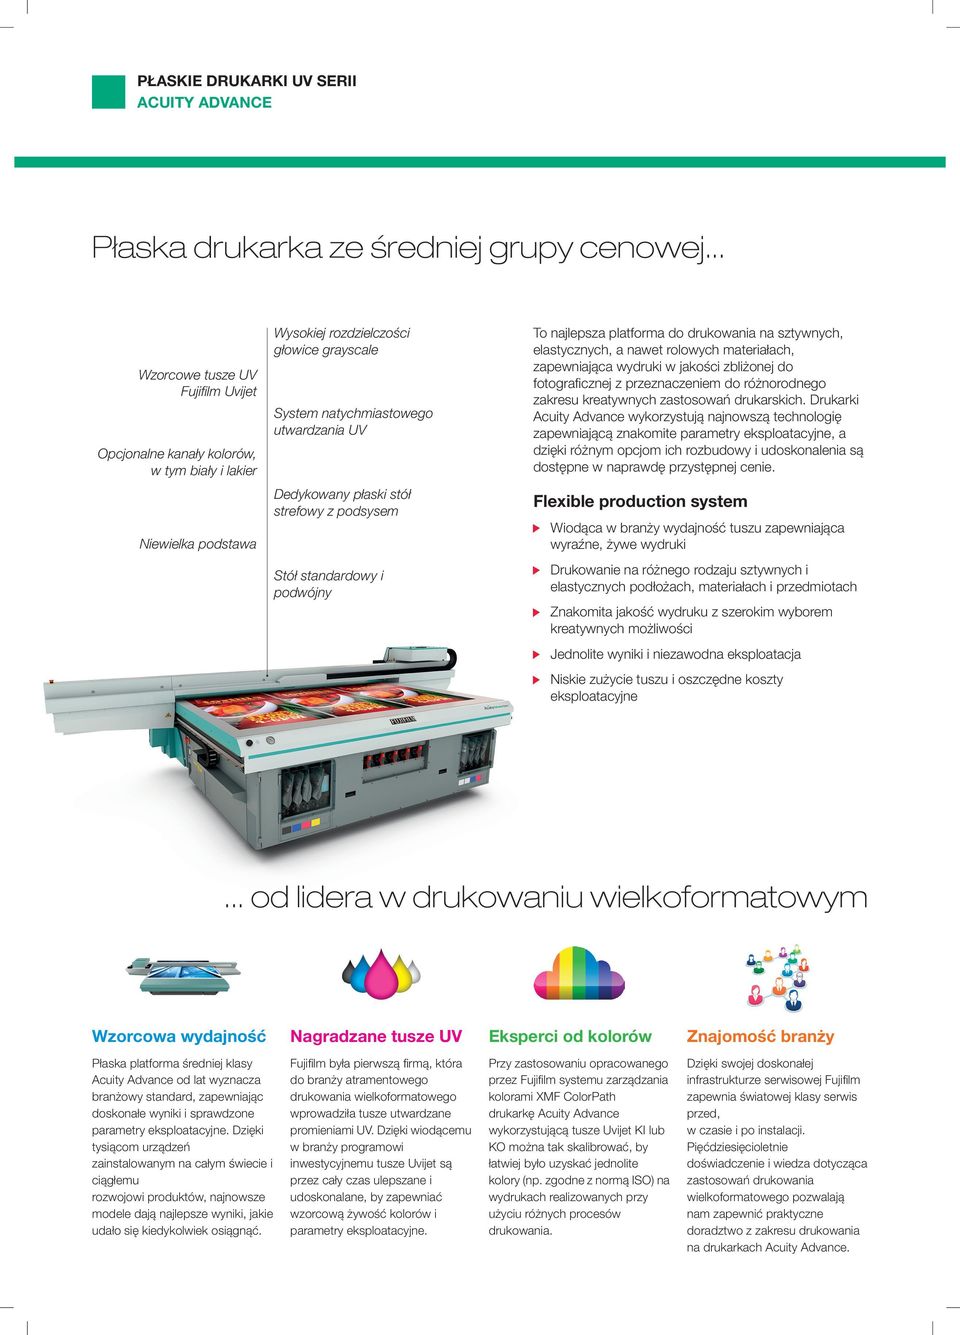 płaski stół strefowy z podsysem standardowy i podwójny To najlepsza platforma do drukowania na sztywnych, elastycznych, a nawet rolowych materiałach, zapewniająca wydruki w jakości zbliżonej do